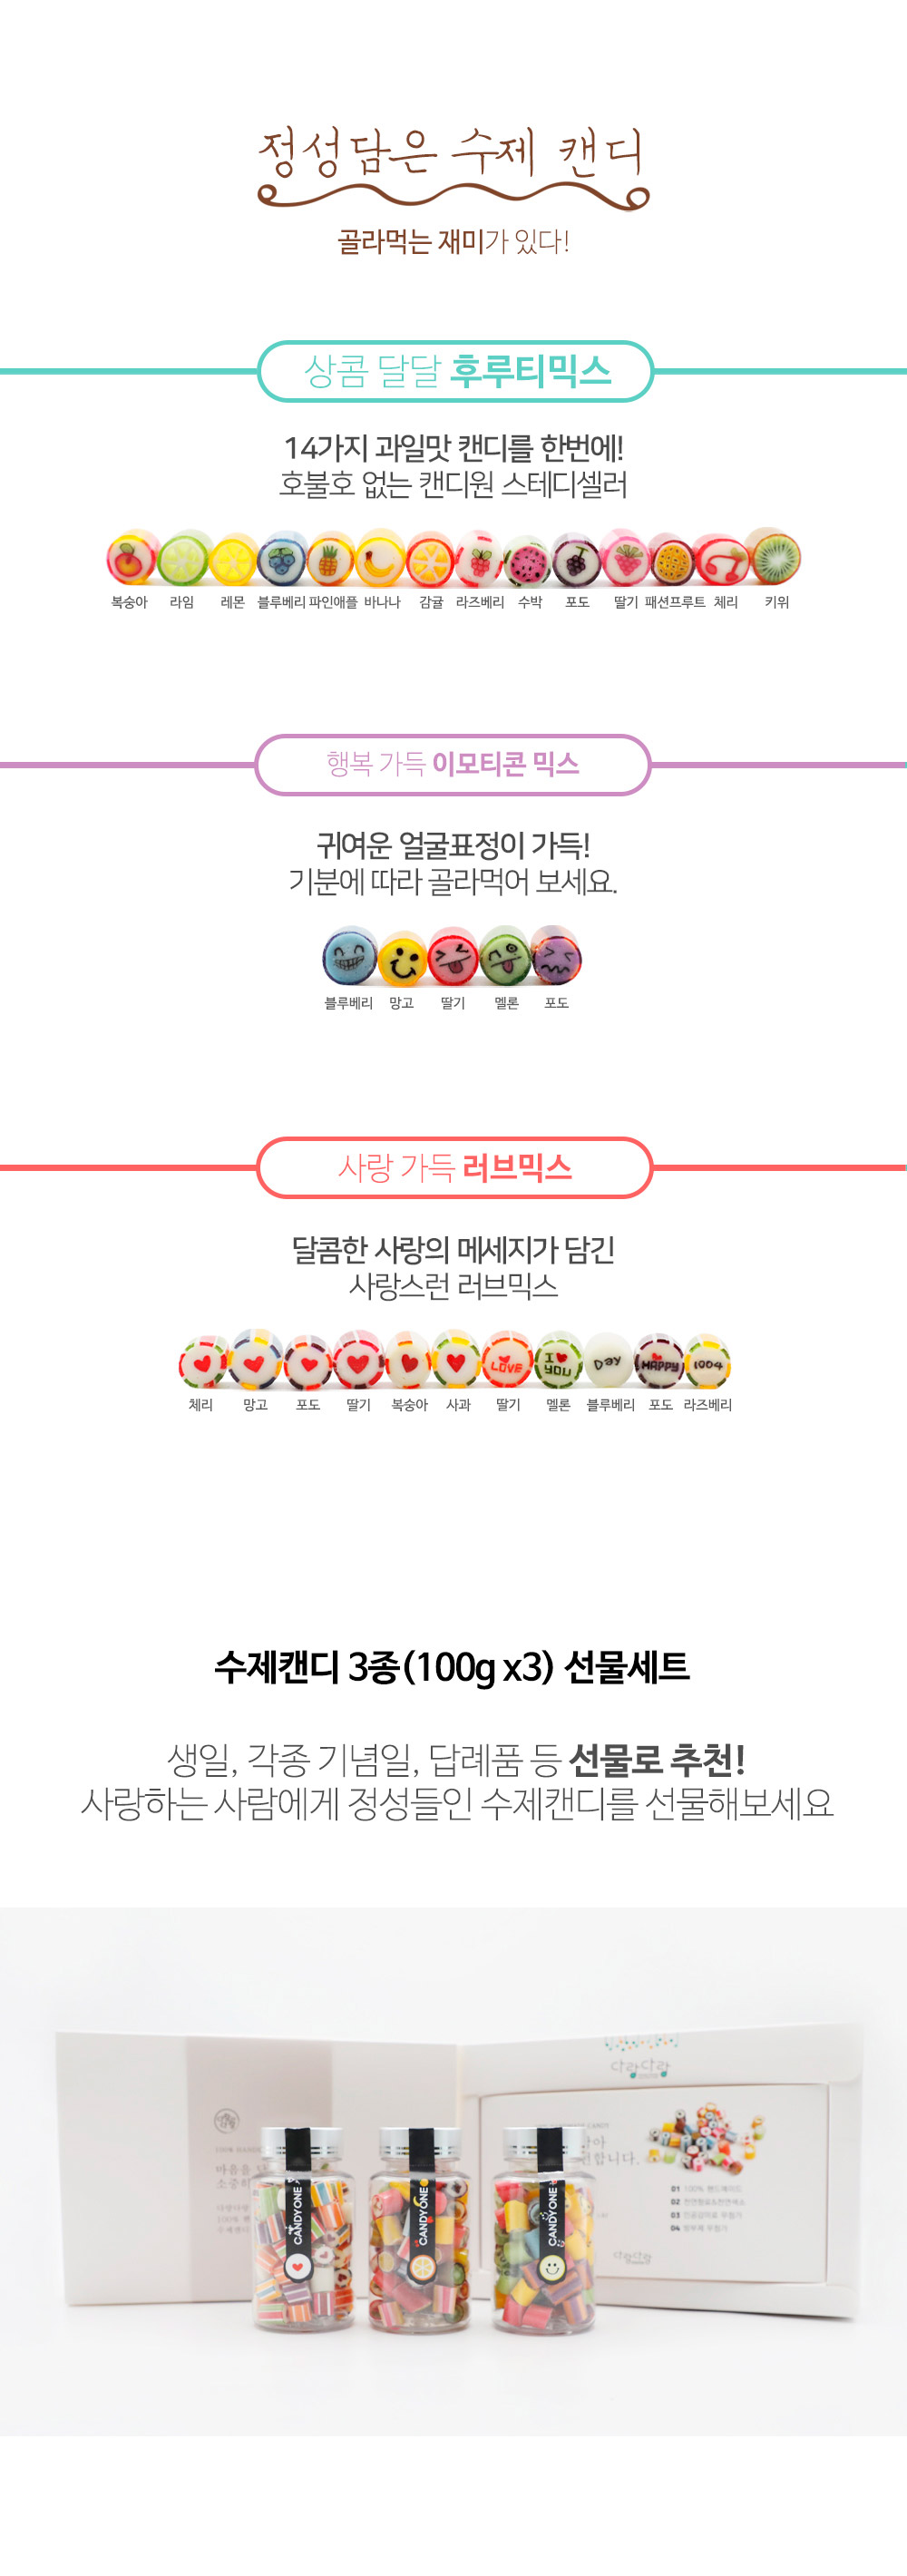 제주캔디원 수제캔디 3종선물세트 무료배송